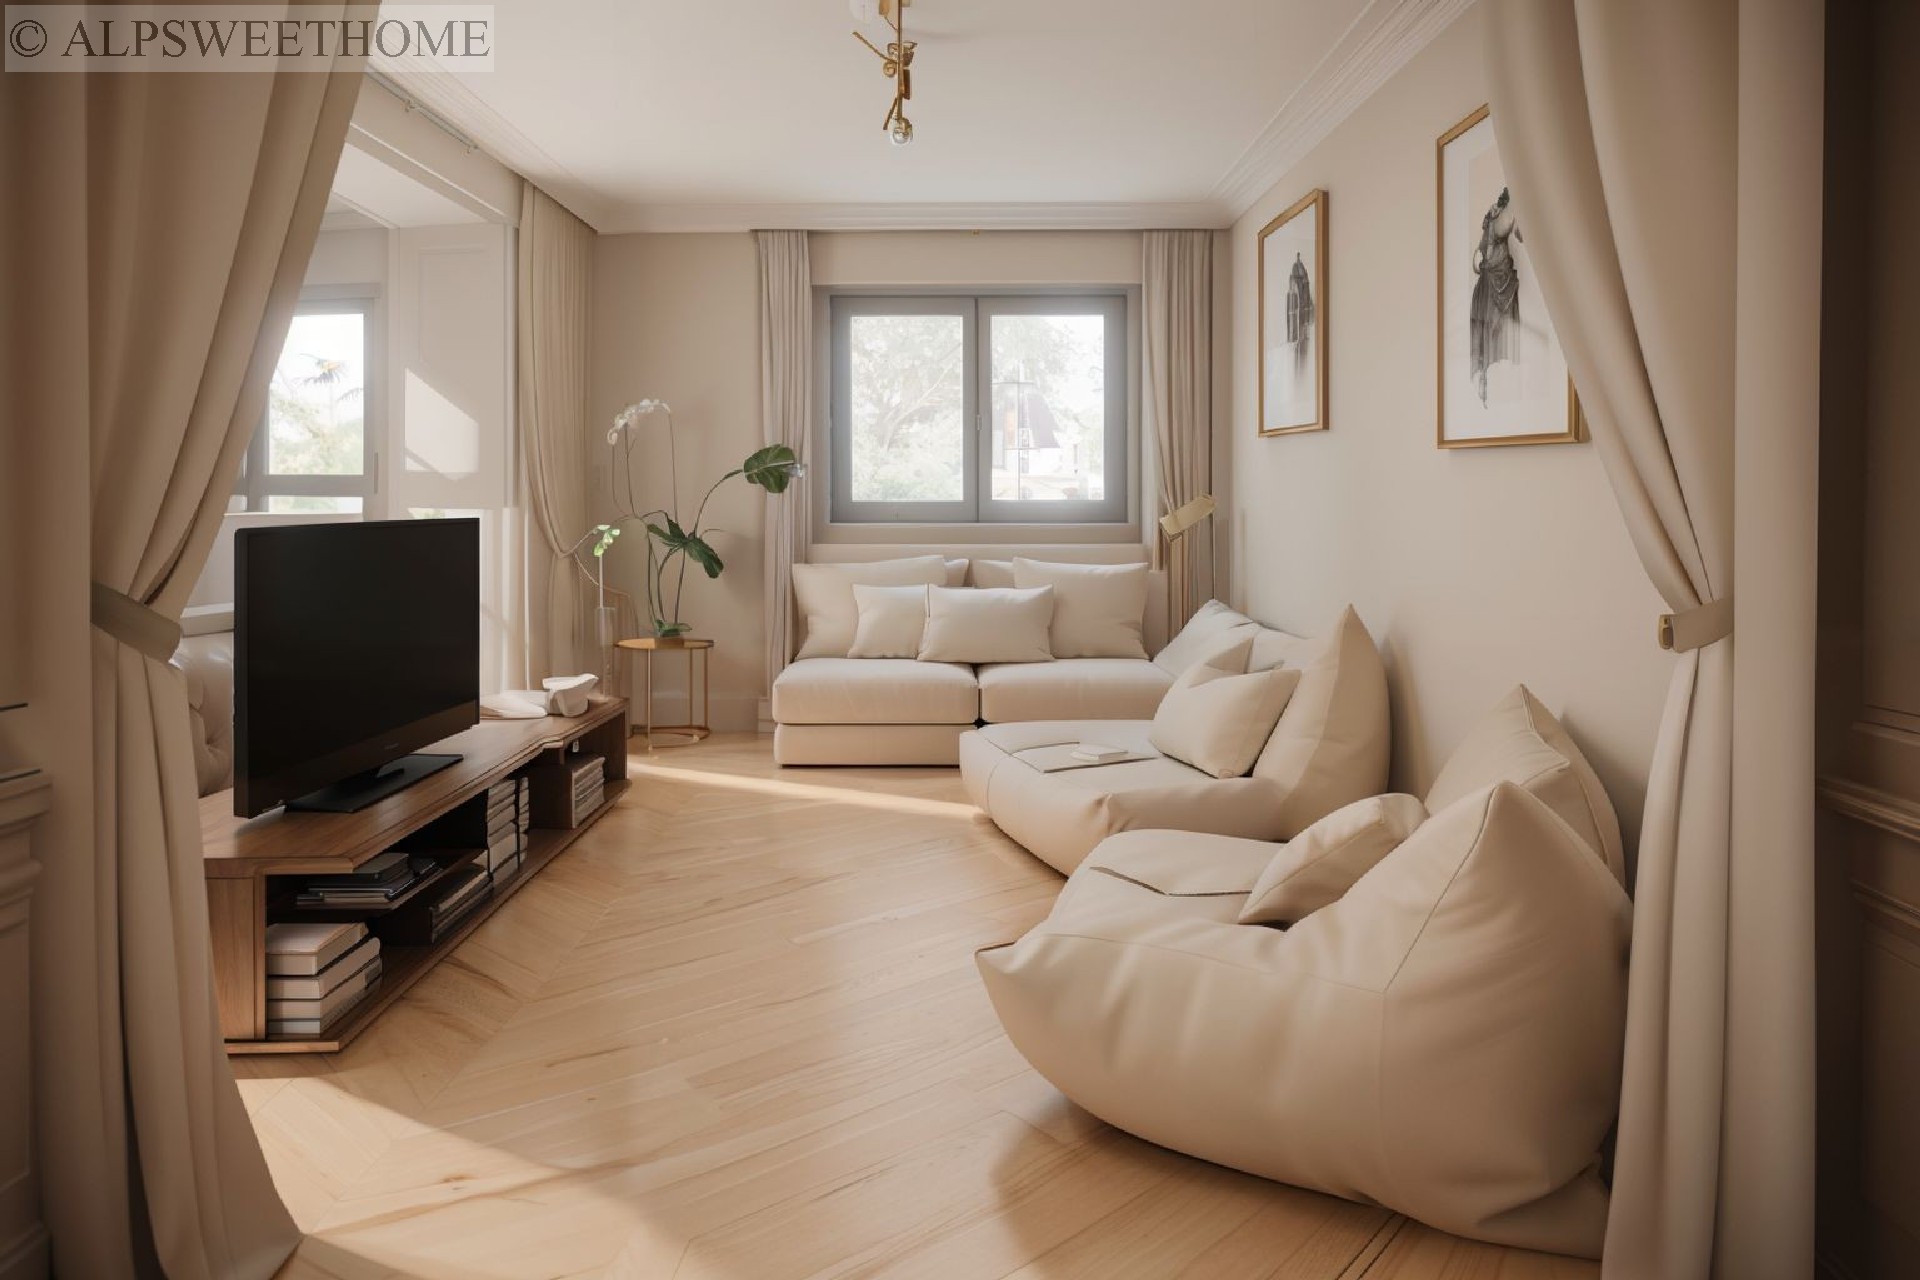 Vente appartement - CHAMONIX MONT BLANC 71 m², 4 pièces